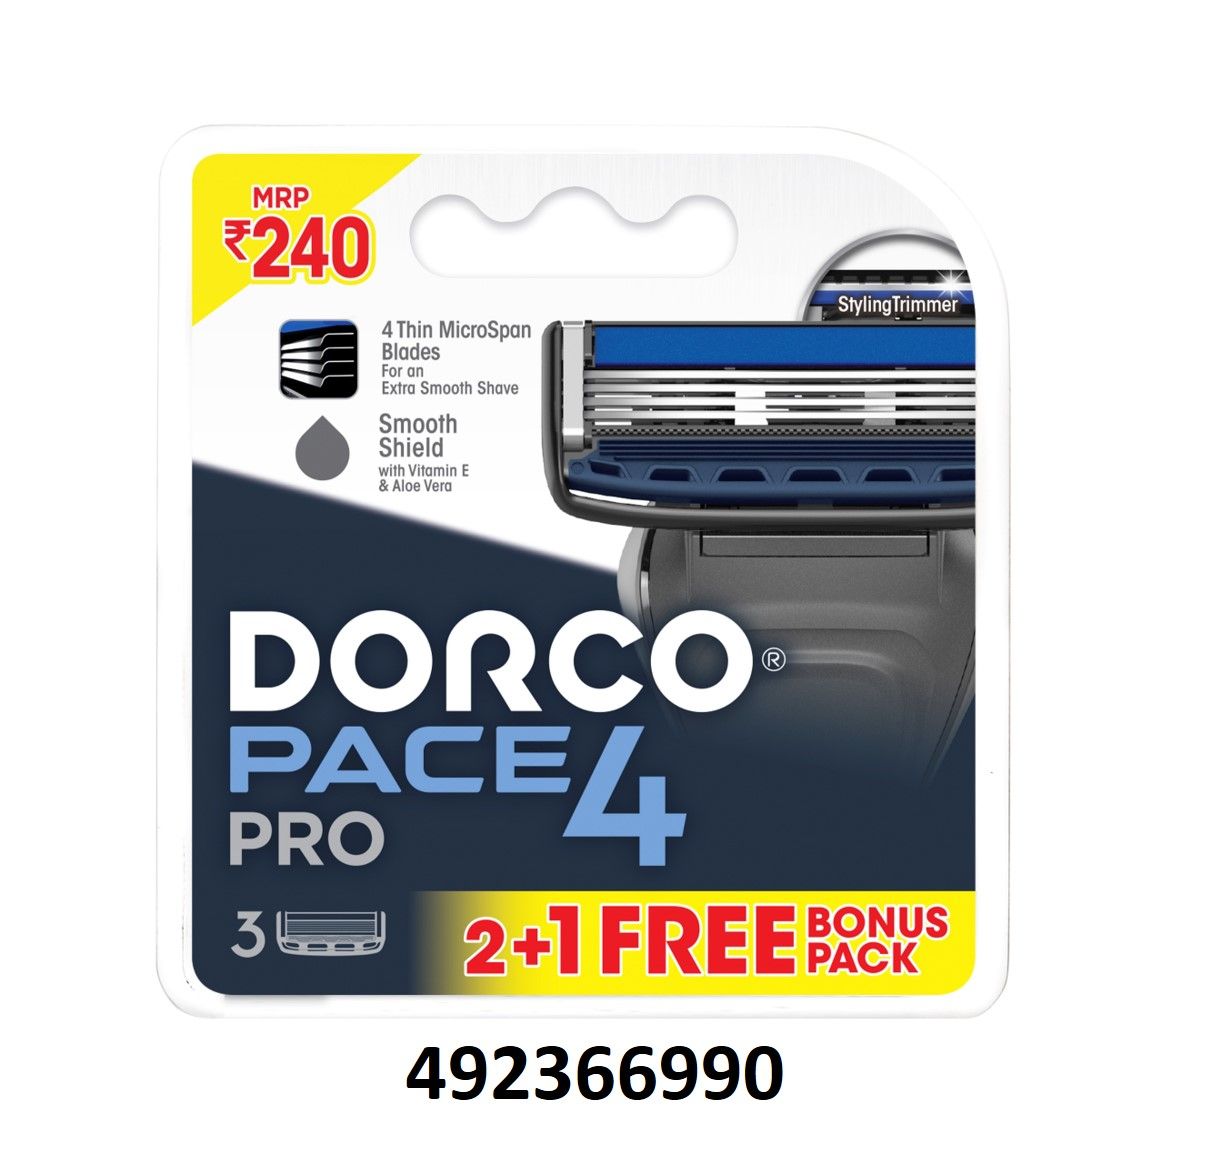 Buy Dorco Pace 4 Pro Cartridges, 2 Count Online